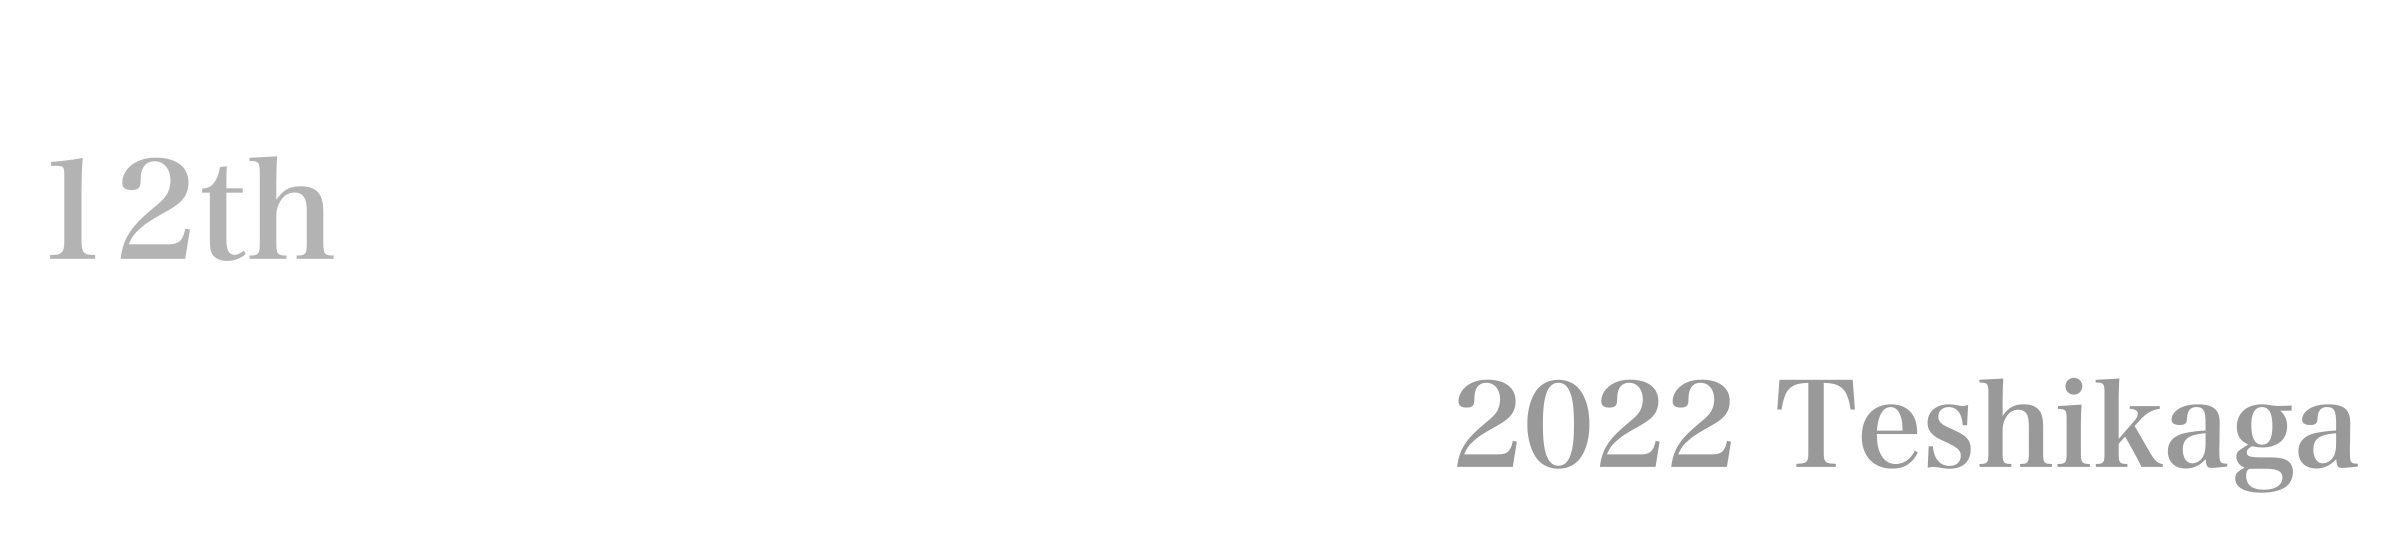 12th 極寒芸術祭 2022 Teshikaga